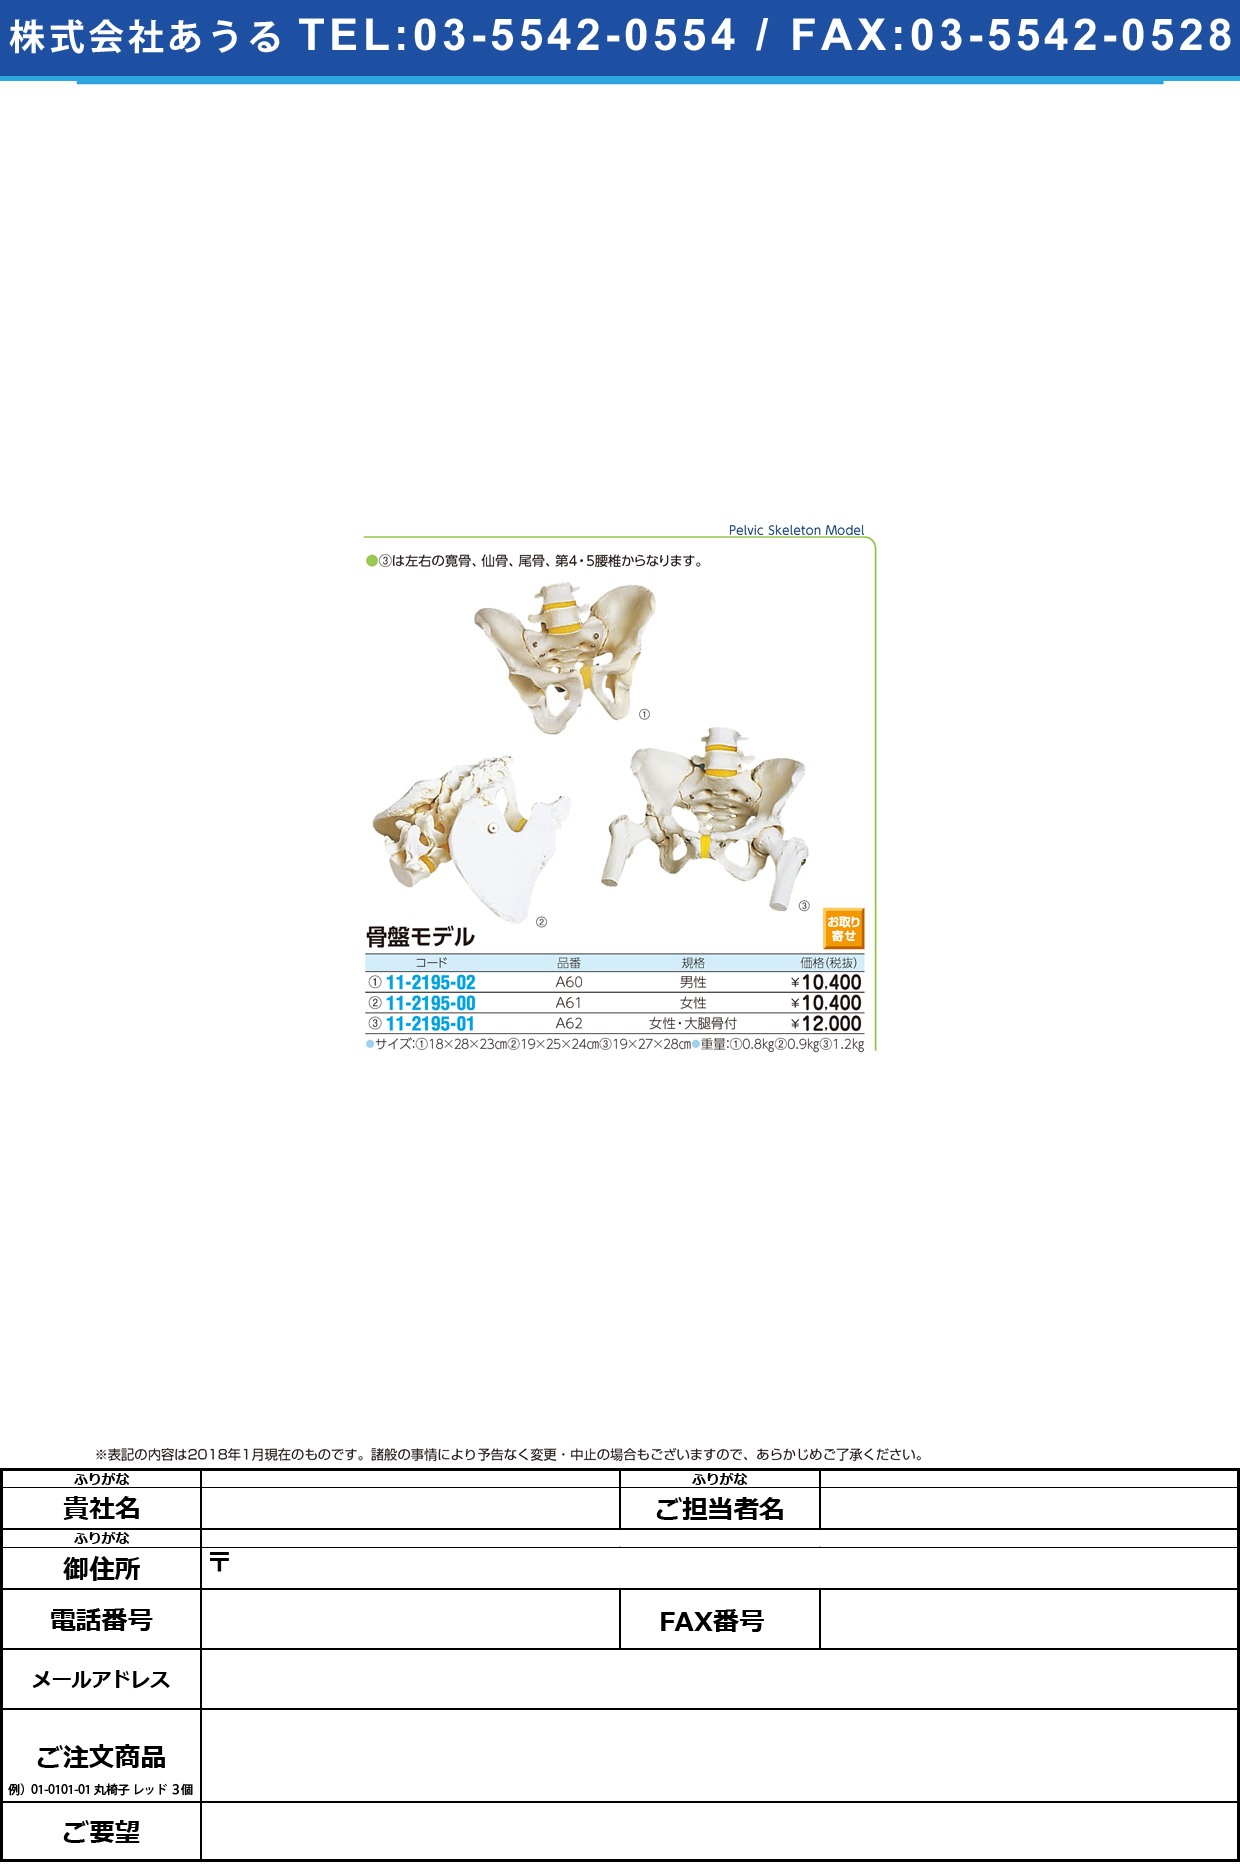 (11-2195-02)骨盤モデル（男性） A60(18X28X23CM) ｺﾂﾊﾞﾝﾓﾃﾞﾙ(京都科学)【1台単位】【2019年カタログ商品】